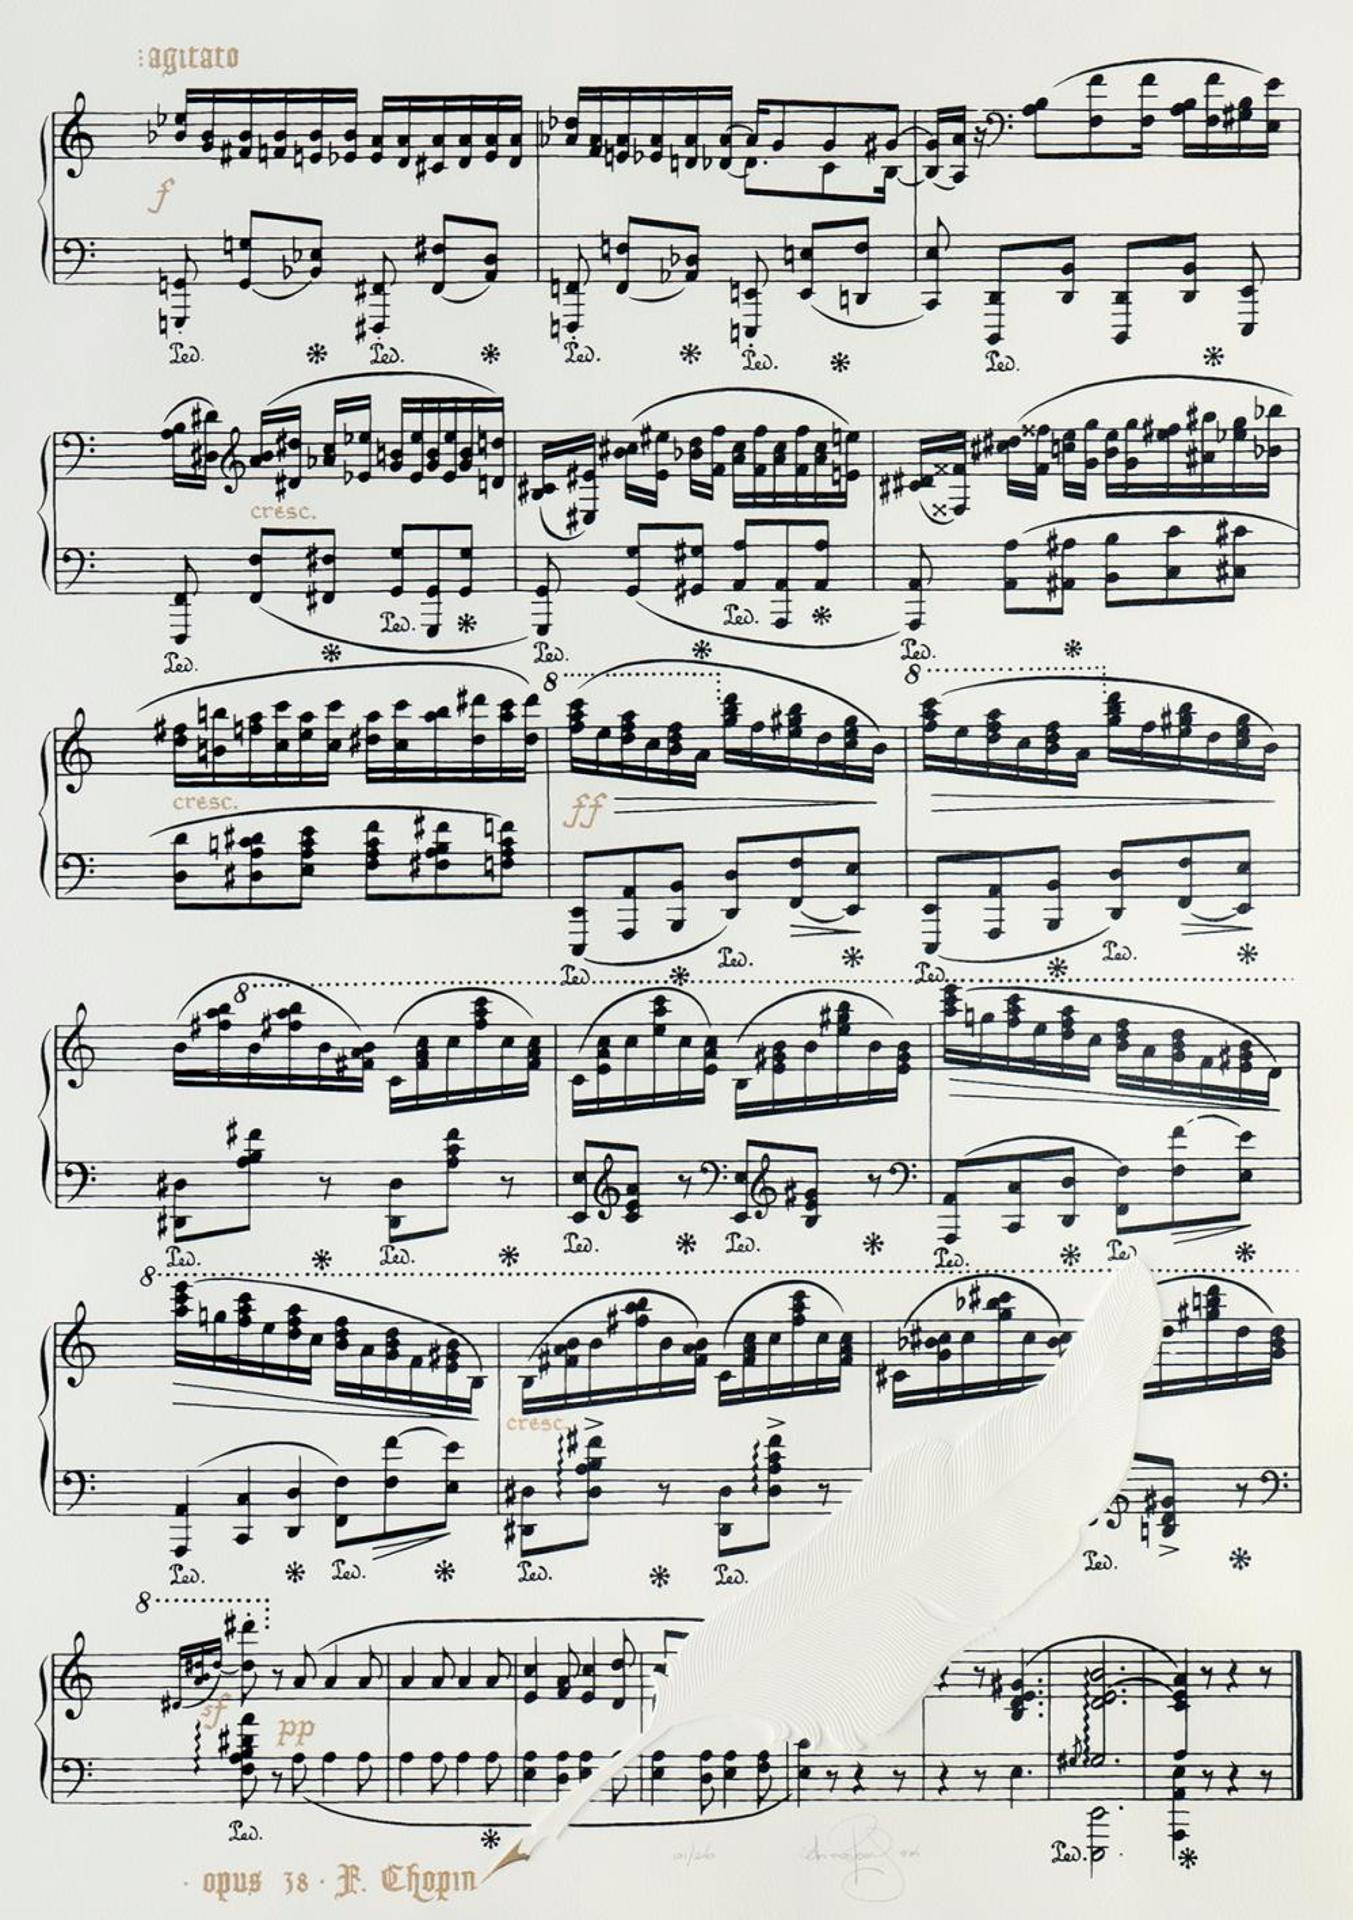 Ian Kochberg (1953) - Chopin Opus 38